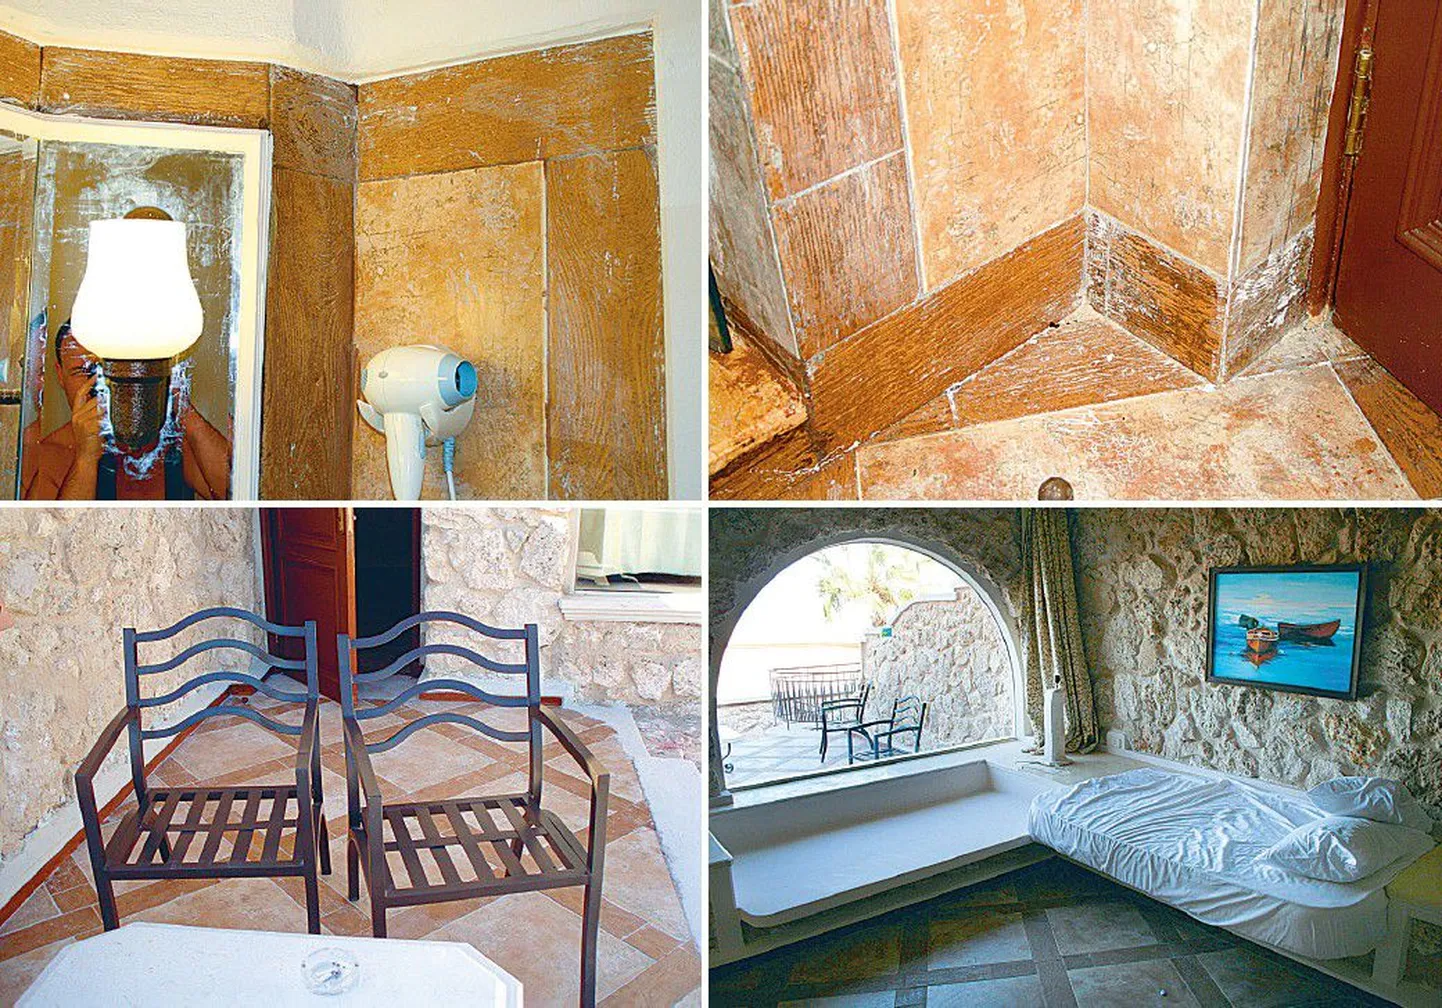 Egiptuse kuurortlinna Hurghadasse puhkama sõitnute väitel olid neile antud toad tolmused, koristamata ning puudus osa mööblist. Näiteks terrassitoolidel polnud patju ja lambil kuplit.